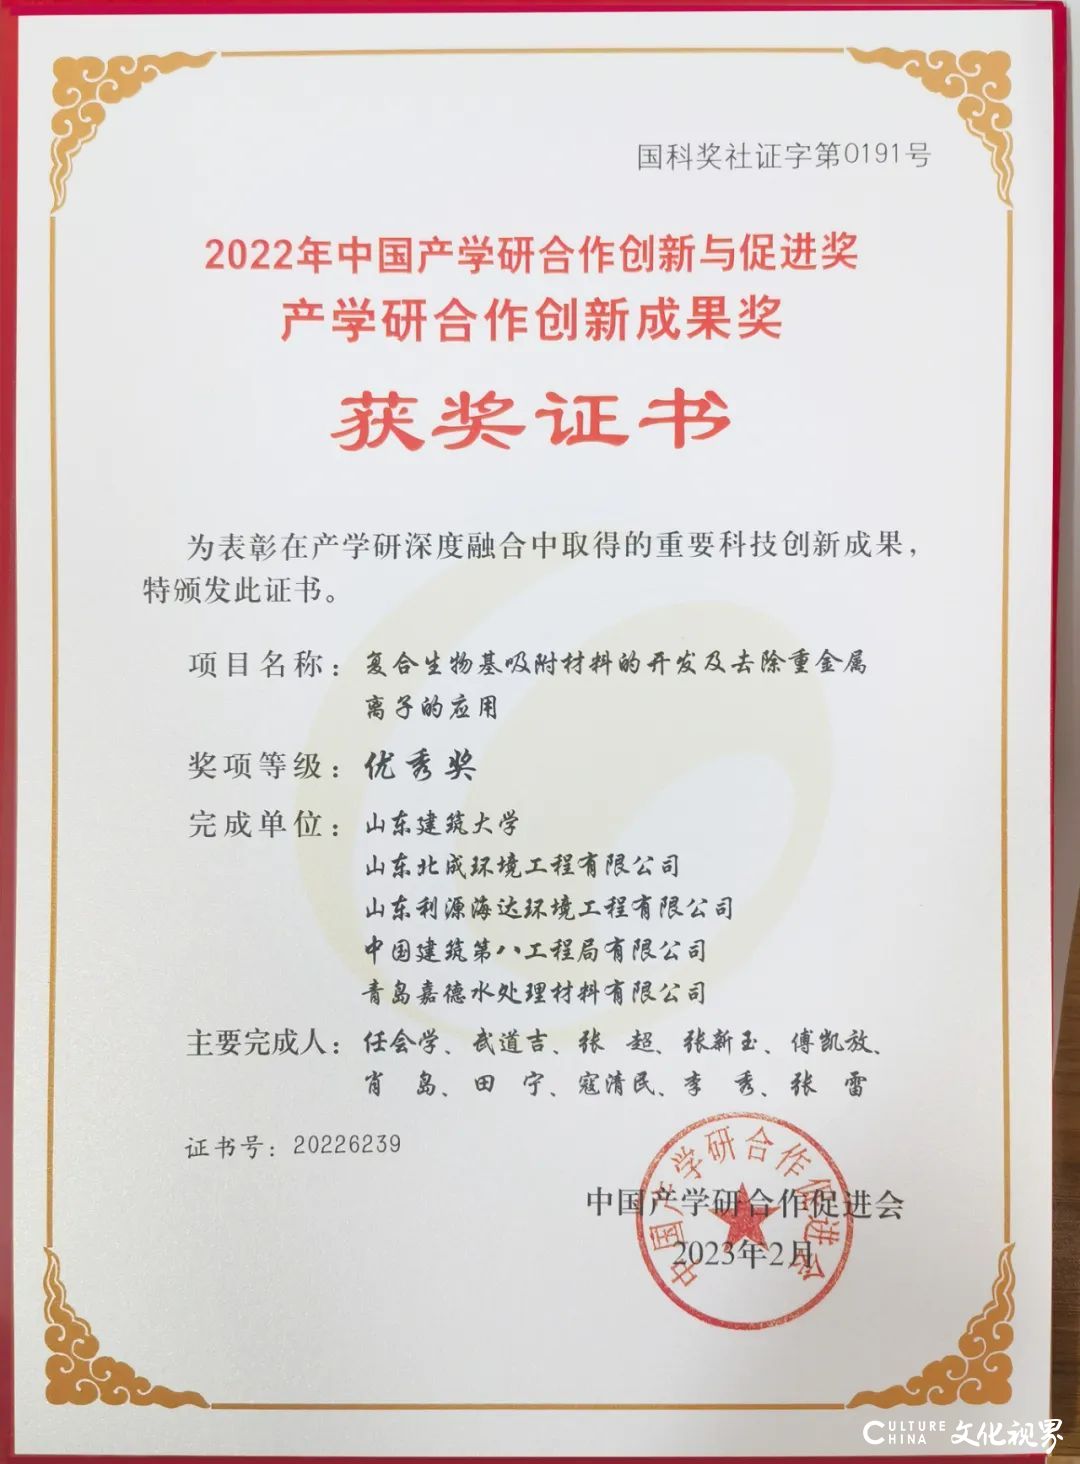 山东北成环境工程公司荣获“2022年中国产学研合作创新成果奖”